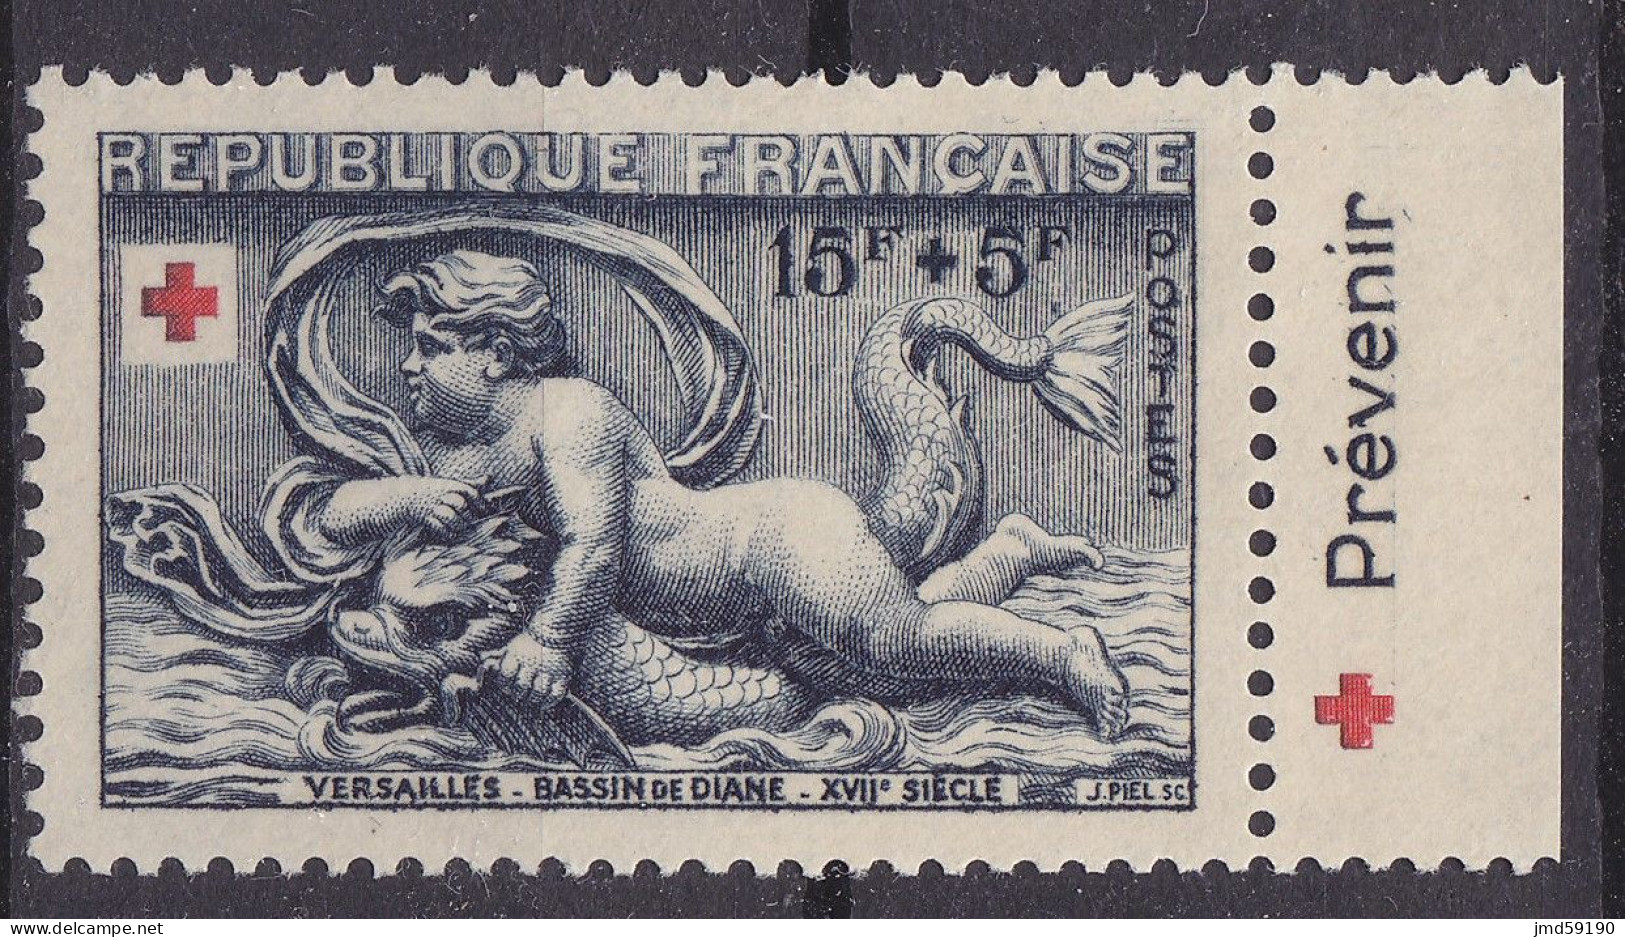 Timbre Neuf* NSG 938a Avec Bandelette Publicitaire PREVENIR, Issu Du Carnet Croix Rouge De 1952 - Unused Stamps